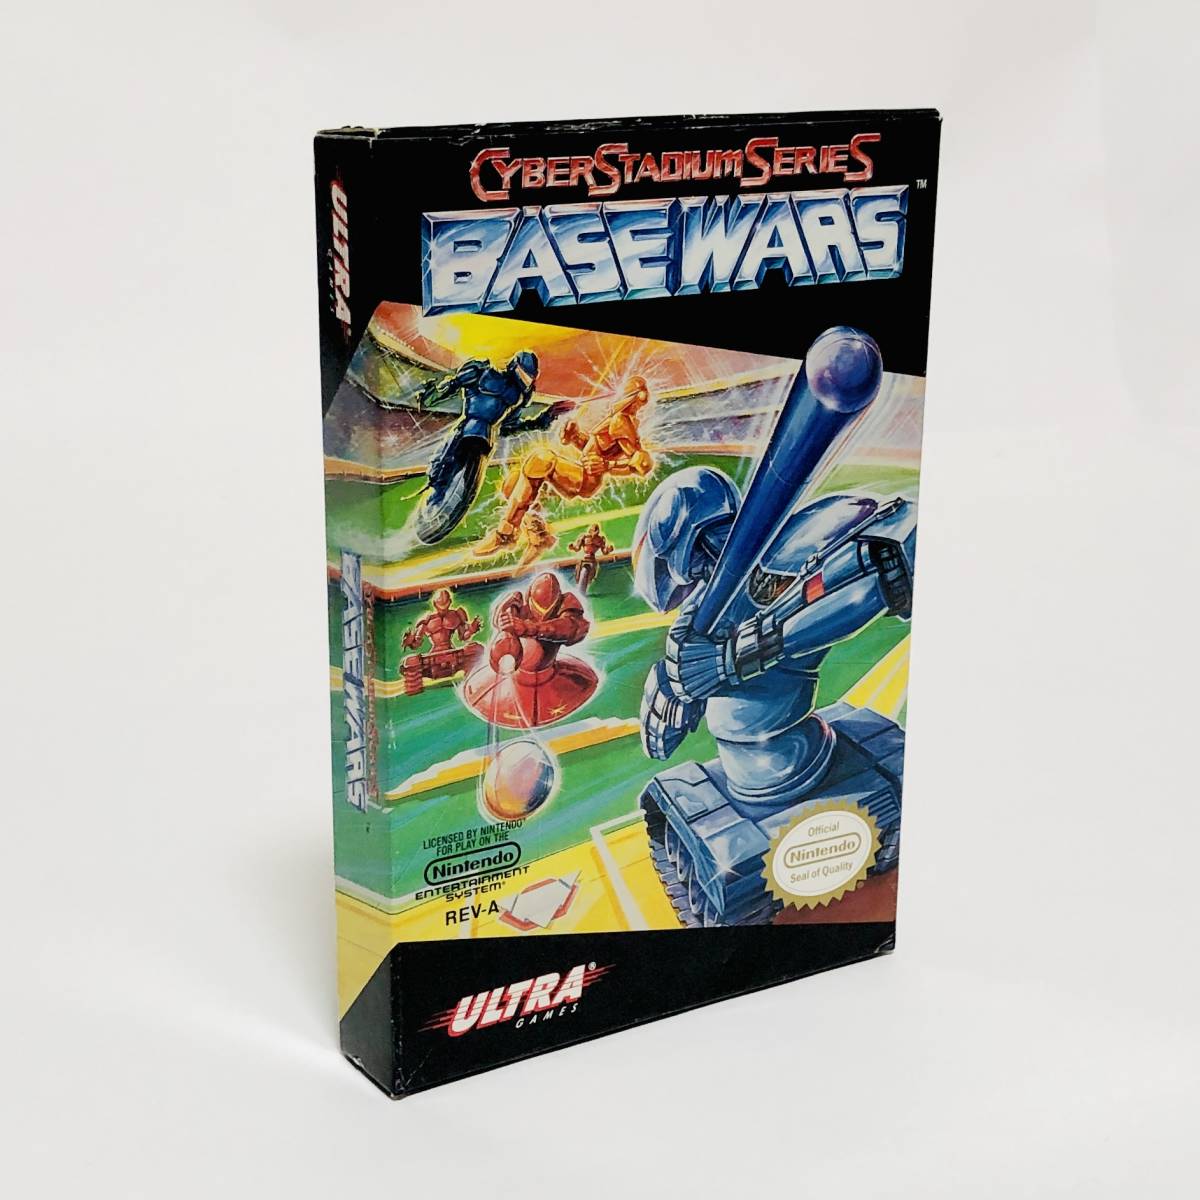 北米版 ファミコン NES ベースウォーズ Cyber Stadium Series Base Wars 外箱＋ソフト付き 説明書欠品 Ultra Games Konami コナミ_画像2